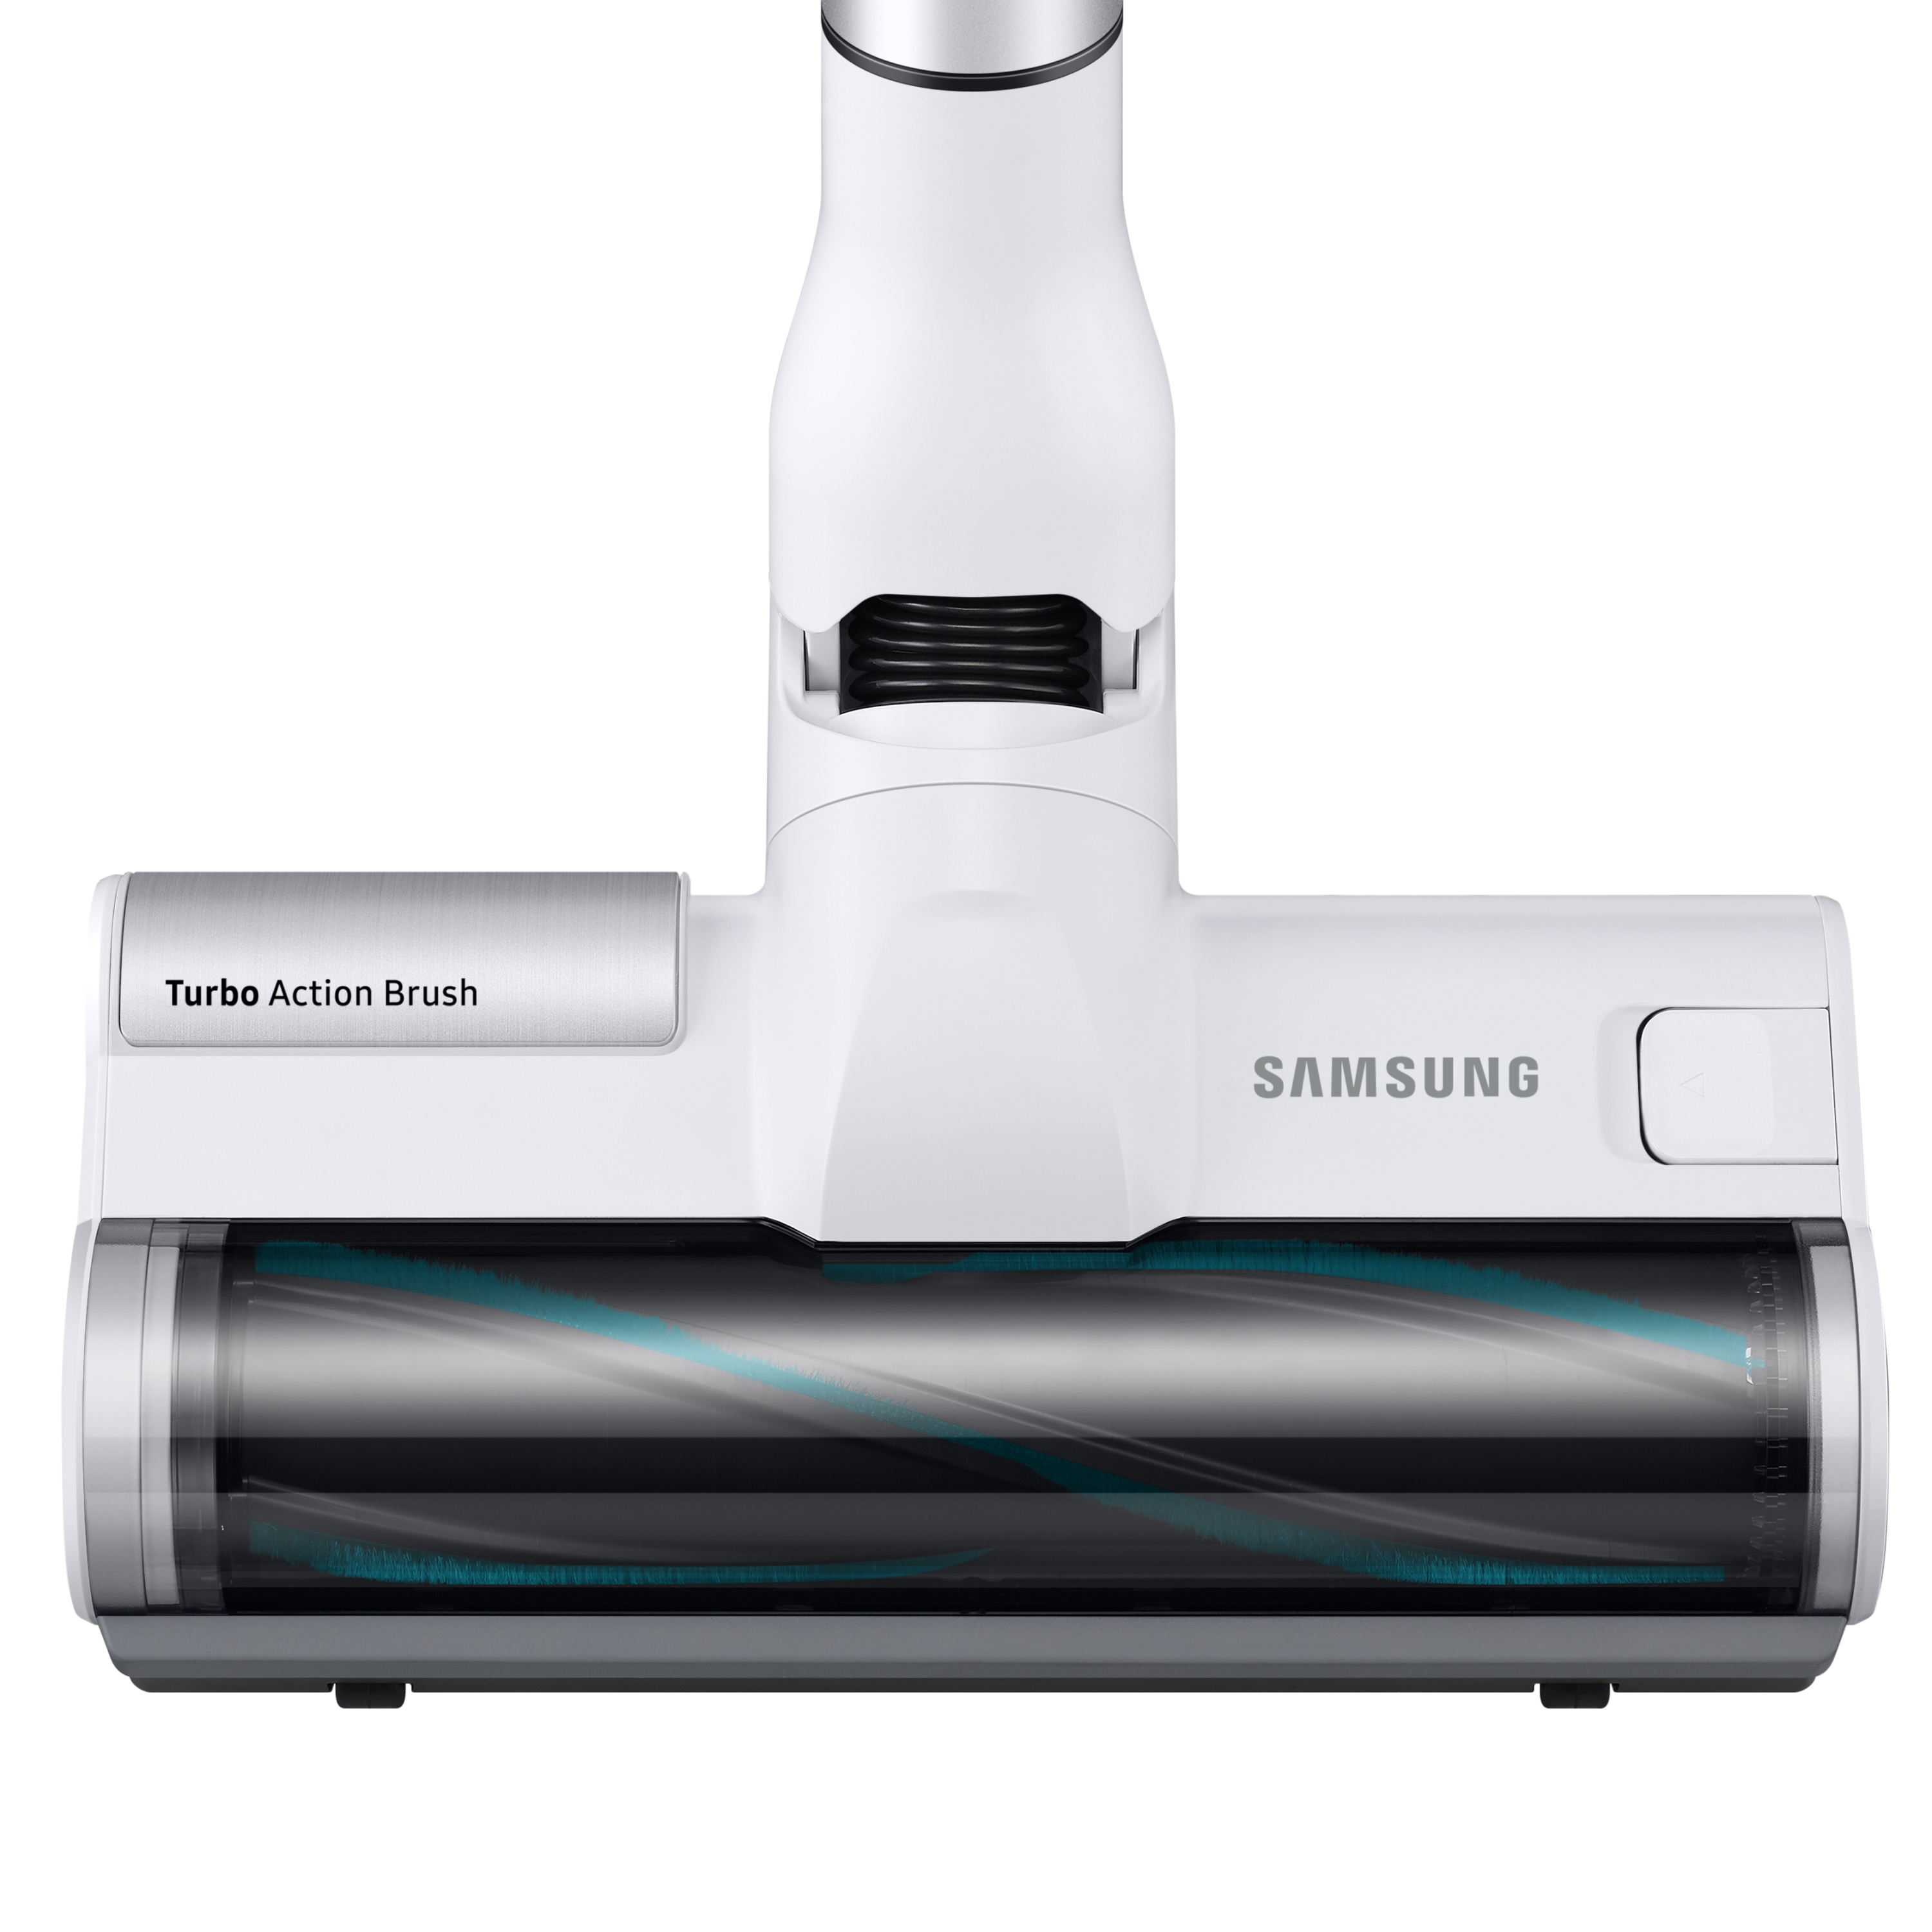 Samsung Jet Slim LED Brush